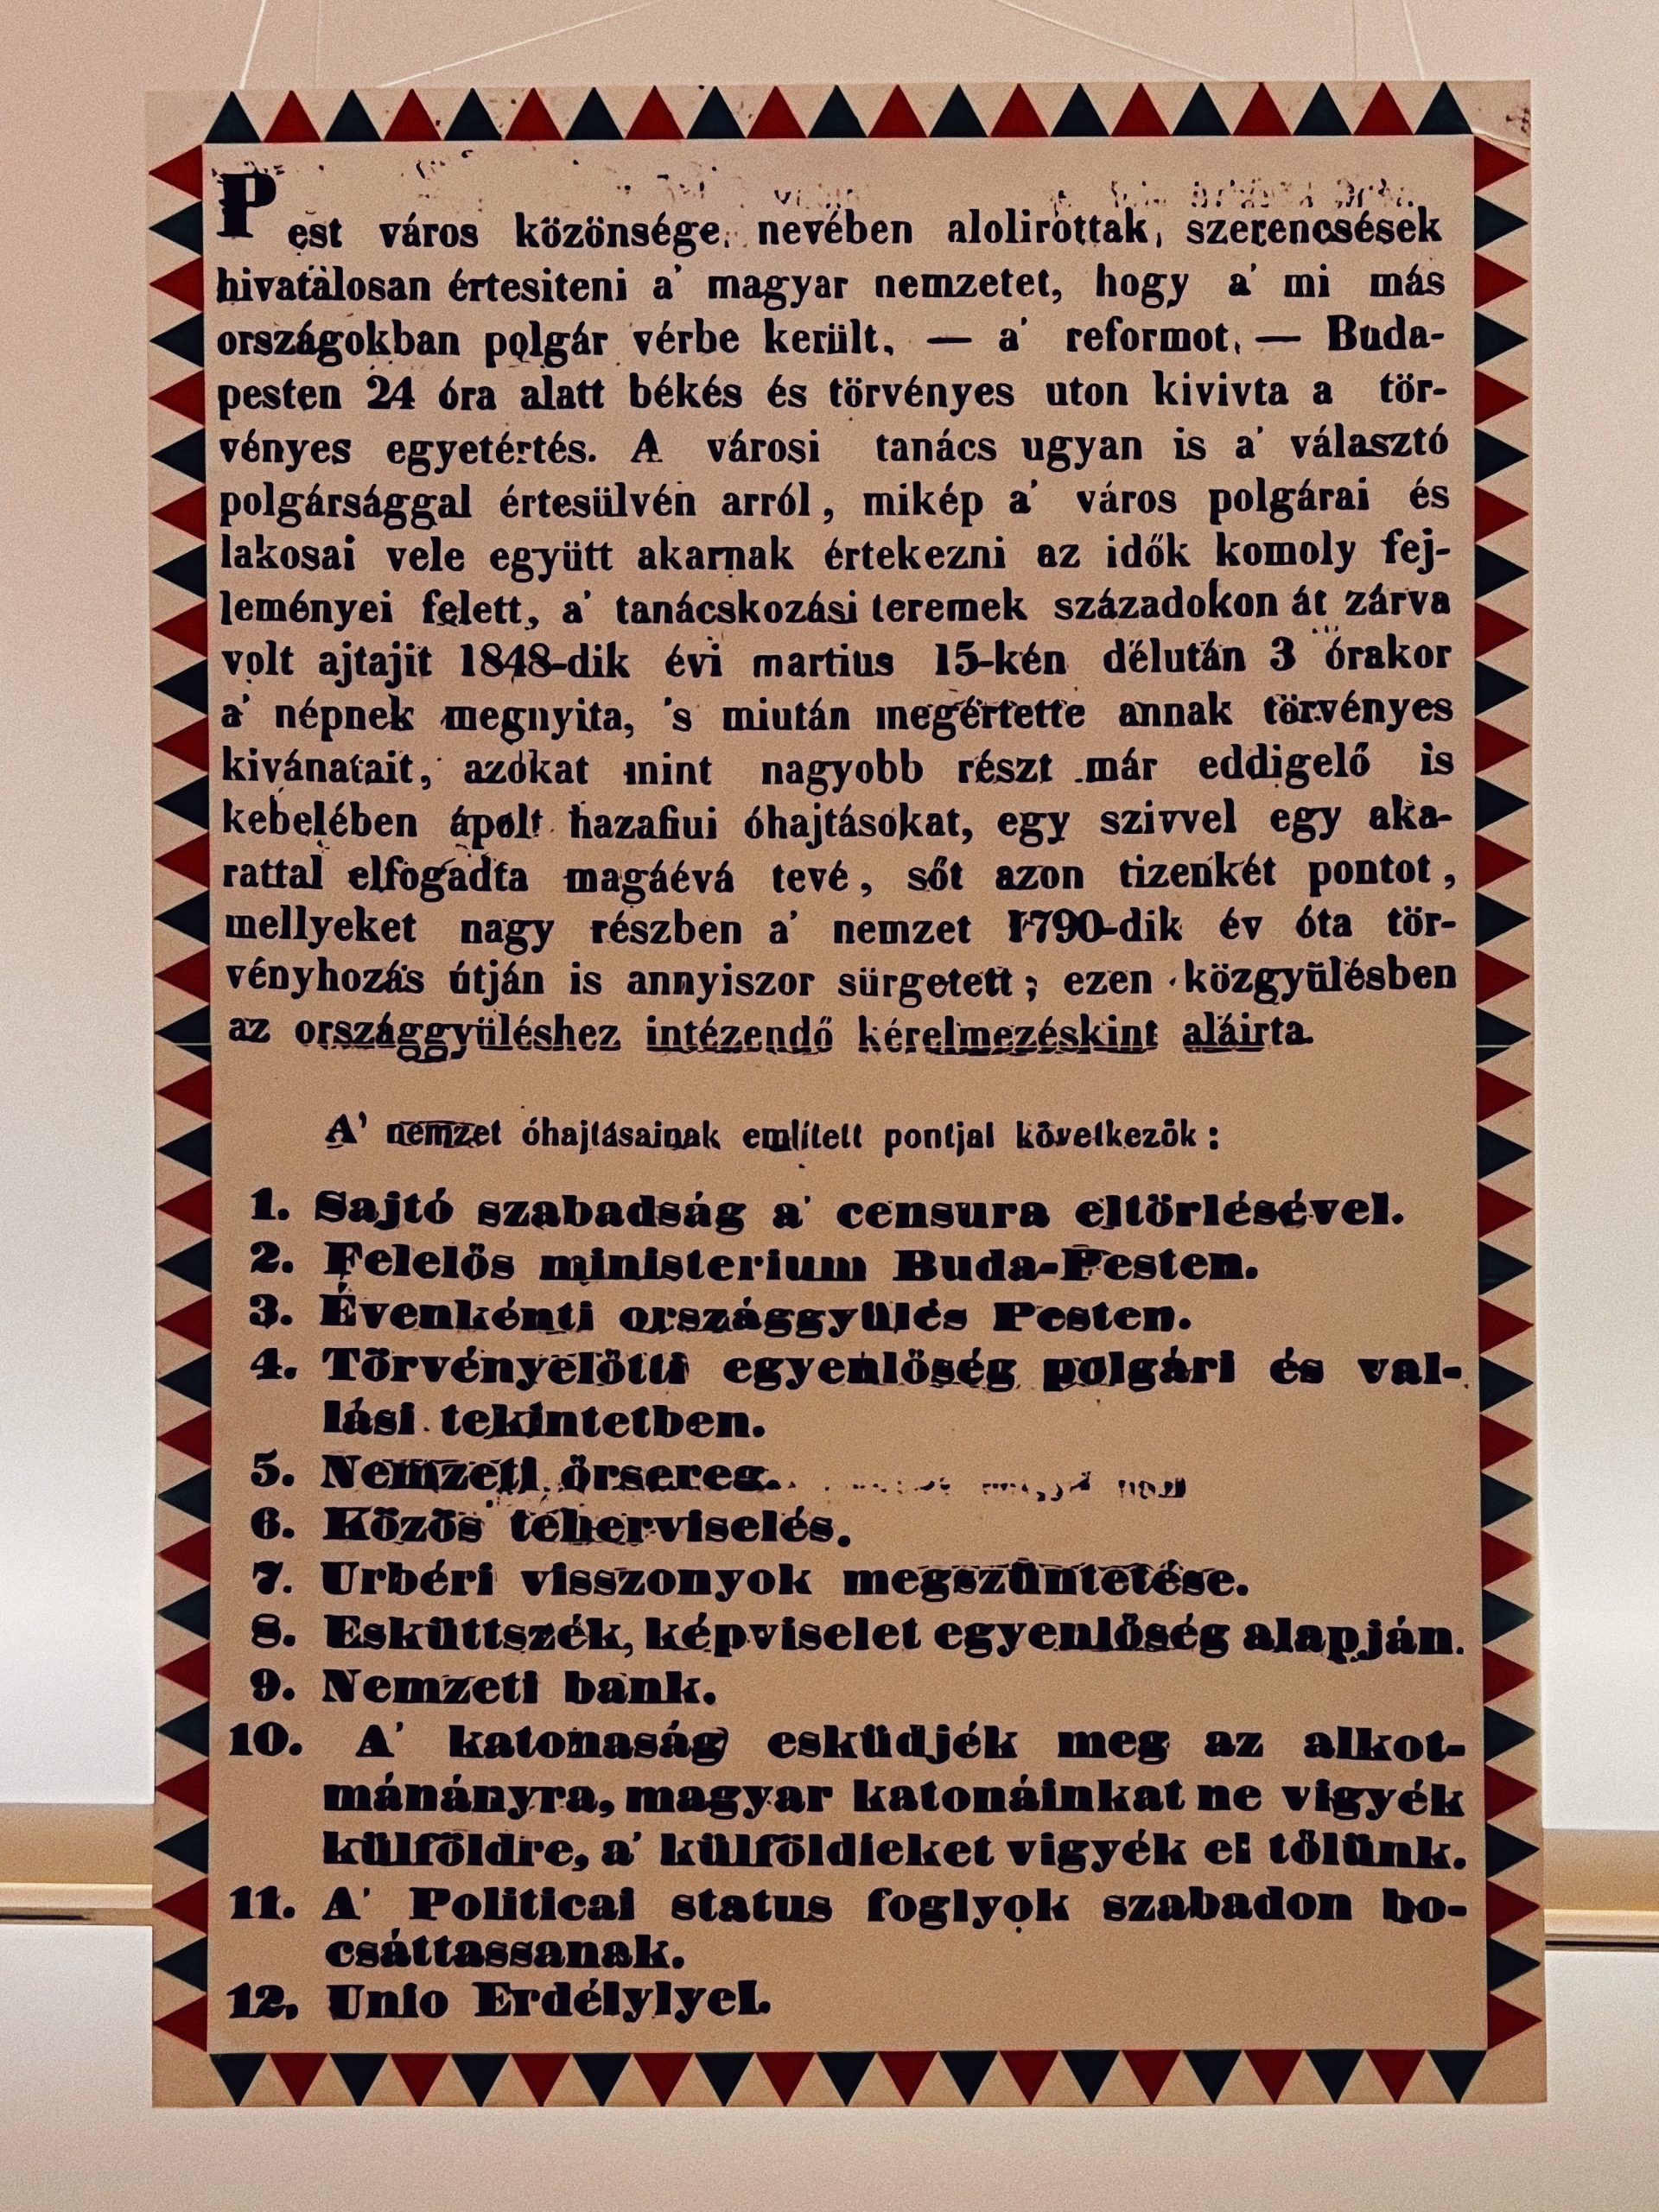 15 de Marzo - Día Nacional de Hungría - Revolución y Guerra de Independencia 1848-49